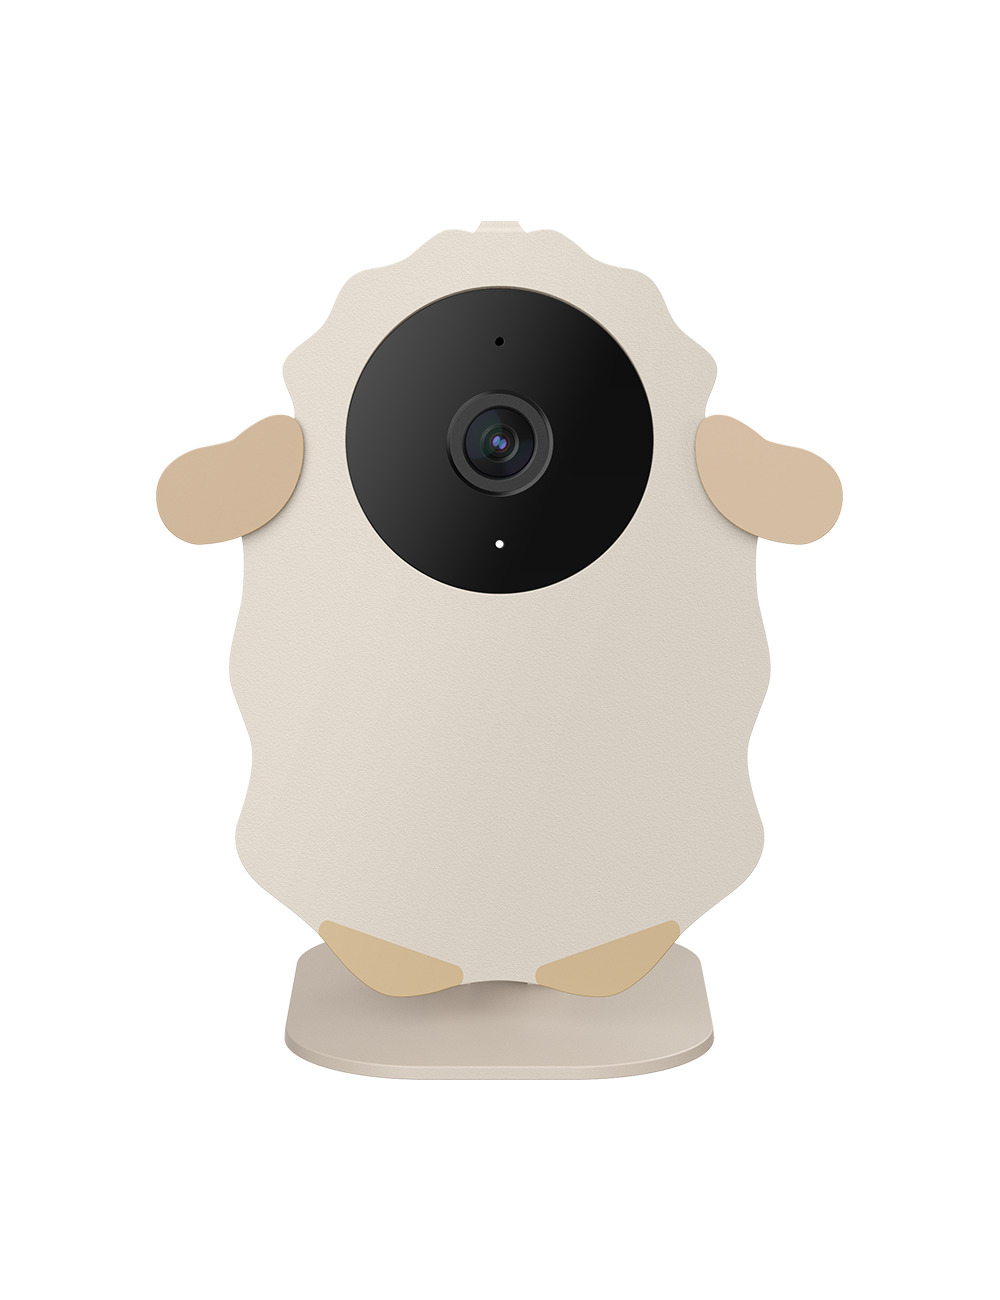 E-boutique Evitas  Neno® Babyphone caméra WiFi Lui